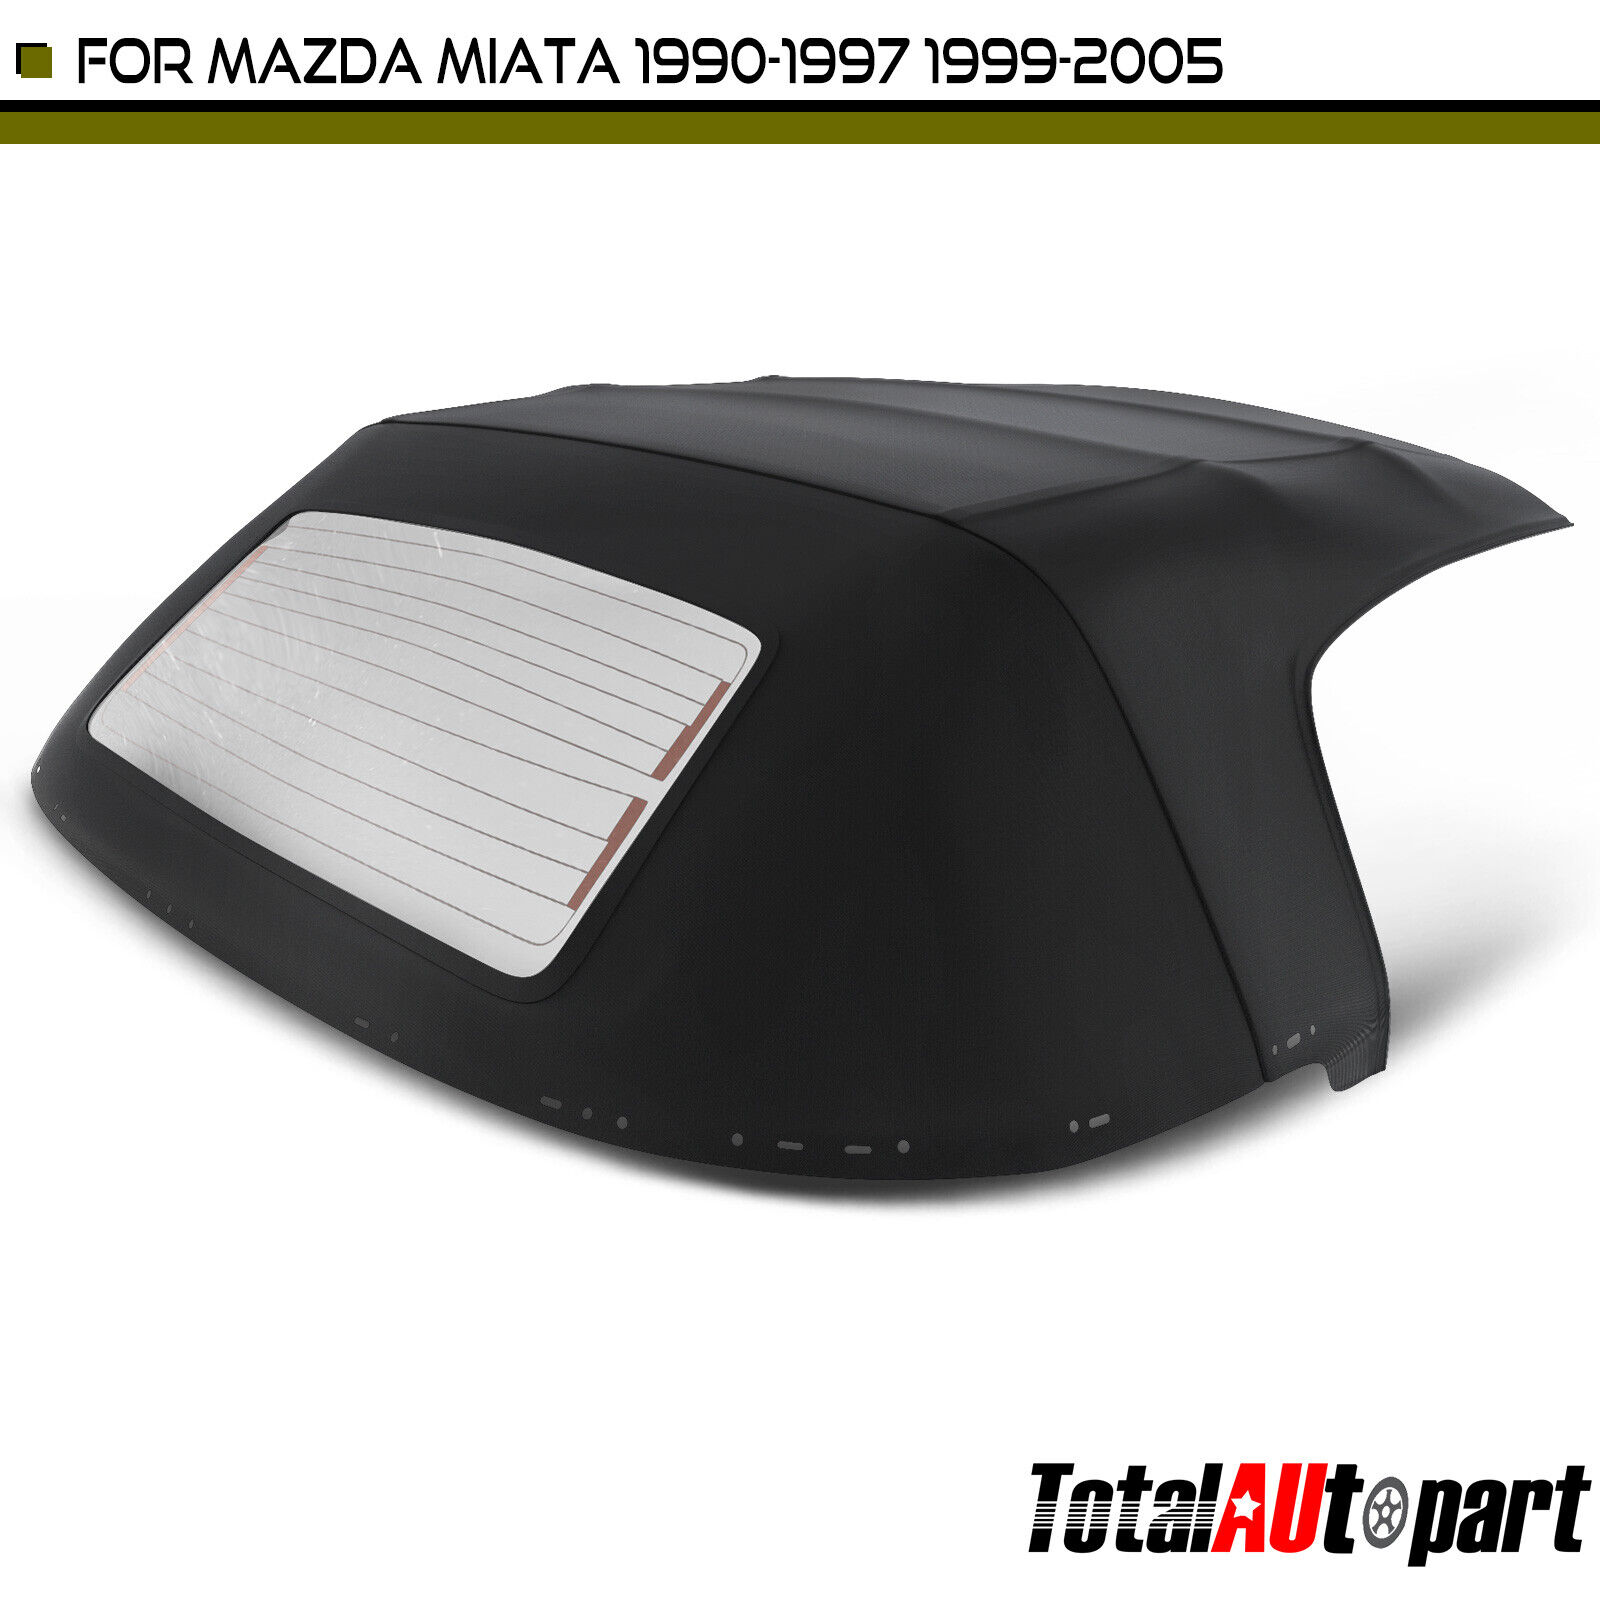 New Black Convertible Soft Top for Mazda Miata 1990-1997 99-05 w/ Glass Window